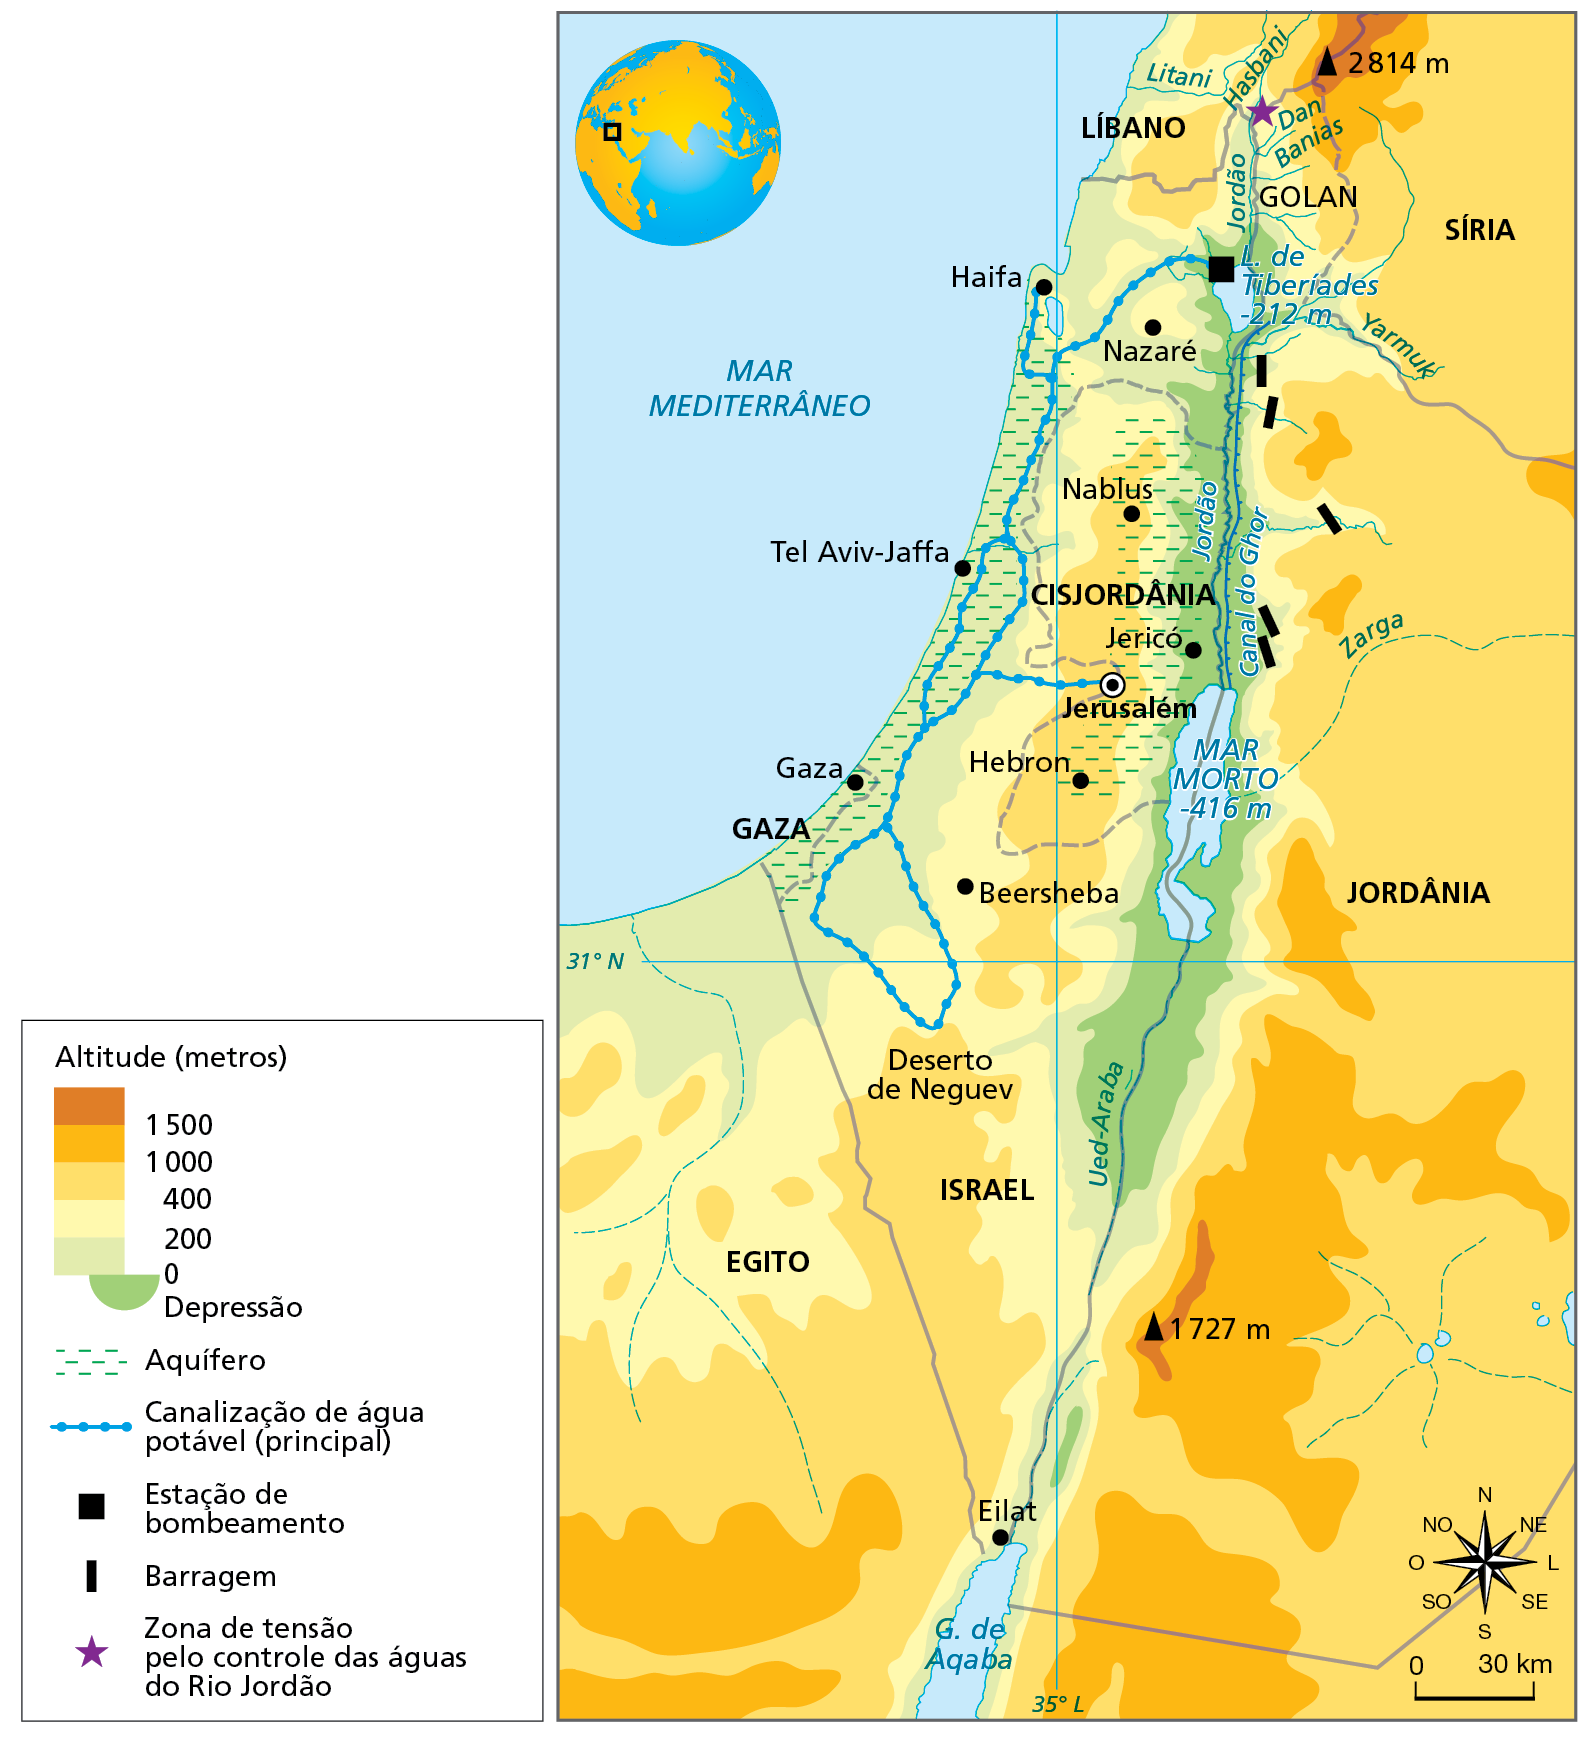 Mapa. Israel e Palestina: a questão da água, 2019. Mapa da porção extremo-oeste do Oriente Médio representando as altitudes e aspectos relacionados à água no norte do Egito, oeste da Jordânia e da Síria, sul do Líbano, Israel, Gaza e Cisjordânia.  
Acima de 1.500 metros (marrom): fragmentos no extremo oeste da Síria e  extremo oeste da Jordânia, onde há picos de 2.814 metros (Síria) e de 1.727 metros (Jordânia). 
1.000 a 1.500 metros (laranja-escuro):  fragmentos na porção oeste da Síria e da Jordânia.   
400 a 1.000 metros (laranja-claro): predomina na Síria, na Jordânia e na porção nordeste do Egito.   
200 a 400 metros (amarelo): faixa no oeste do Egito, de Israel, da Cisjordânia e do Líbano. 
0 a 200 metros (verde-claro): todo o litoral do Egito e de Israel.
Depressão (verde): predomina nas margens dos rios Jordão e Ued-Araba, na fronteira de Israel, Jordânia e Cisjordânia, onde se situam o Lago de Tiberíades, com menos 212 metros e o Mar Morto com menos 416 metros.  
Aquífero (hachura azul): em todo o litoral de Israel e na porção leste da Cisjordânia, próximo ao rio Jordão e onde estão as cidades de Nablus, Jericó, Jerusalém e Hebron. 
Canalização de água potável (principal):  do Lago de Tiberíades passando por Haifa, Tel Aviv Jaffa e Gaza.  
Estação de bombeamento (quadrinho preto): Lago de Tiberíades.
Barragem (retângulo preto): em afluentes do rio Jordão, na Jordânia.  
Zona de tensão pelo controle das águas do Rio Jordão: no rio Hasbani, próximo a Golan. 
Abaixo, rosa dos ventos e escala de 0 a 30 quilômetros.